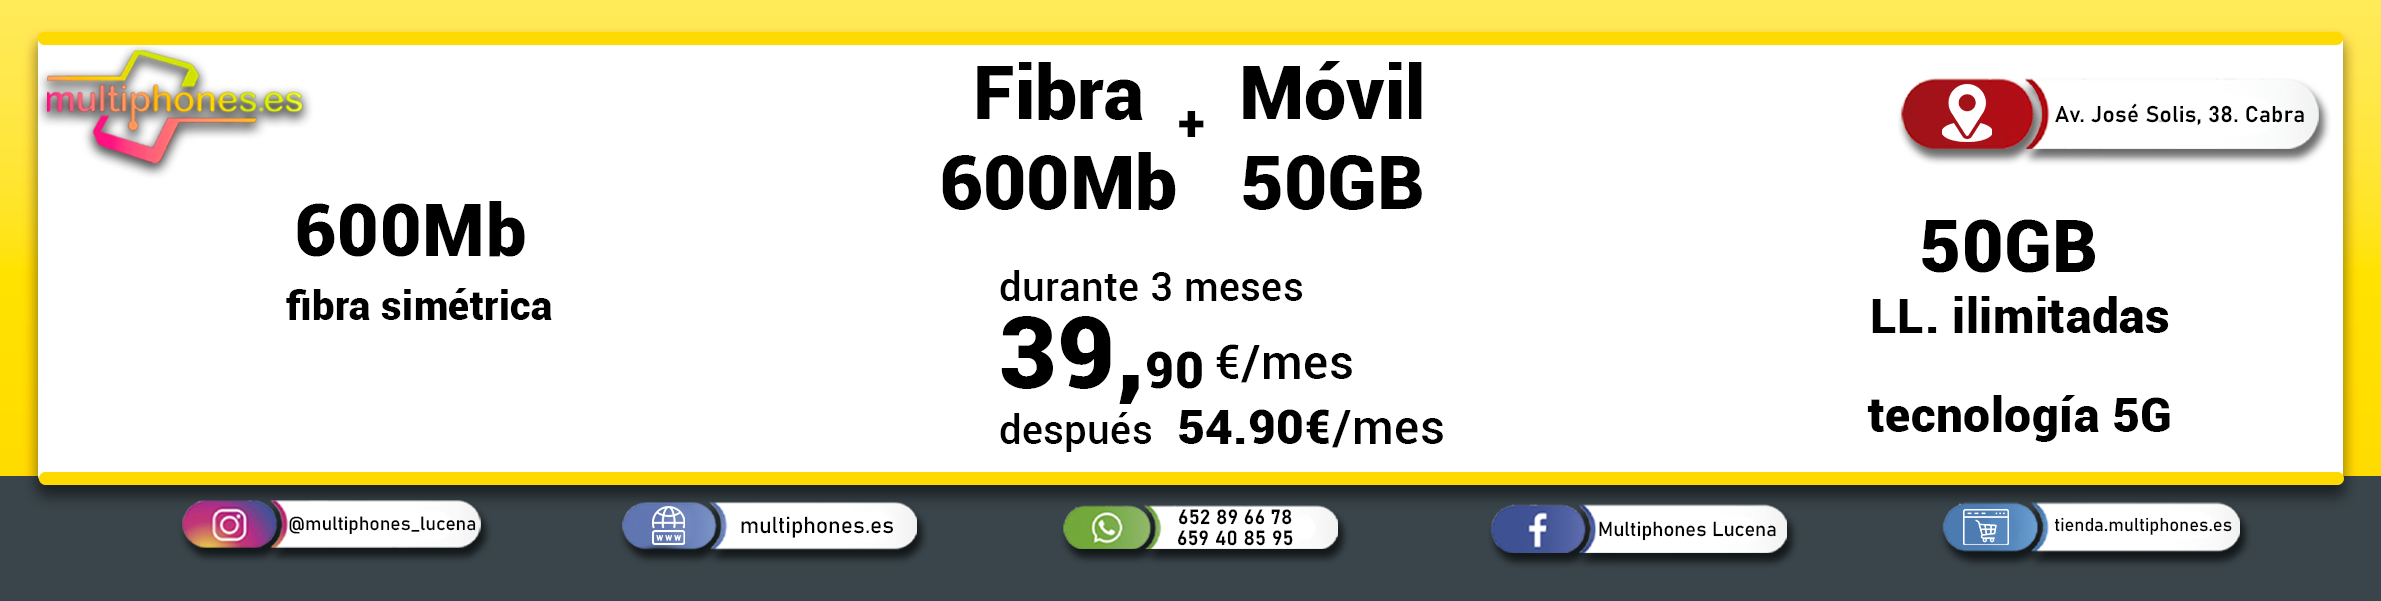 MASMOVIL – FIBRA 600, FIJO Y MÓVIL 50GB y llamadas ilimitadas.